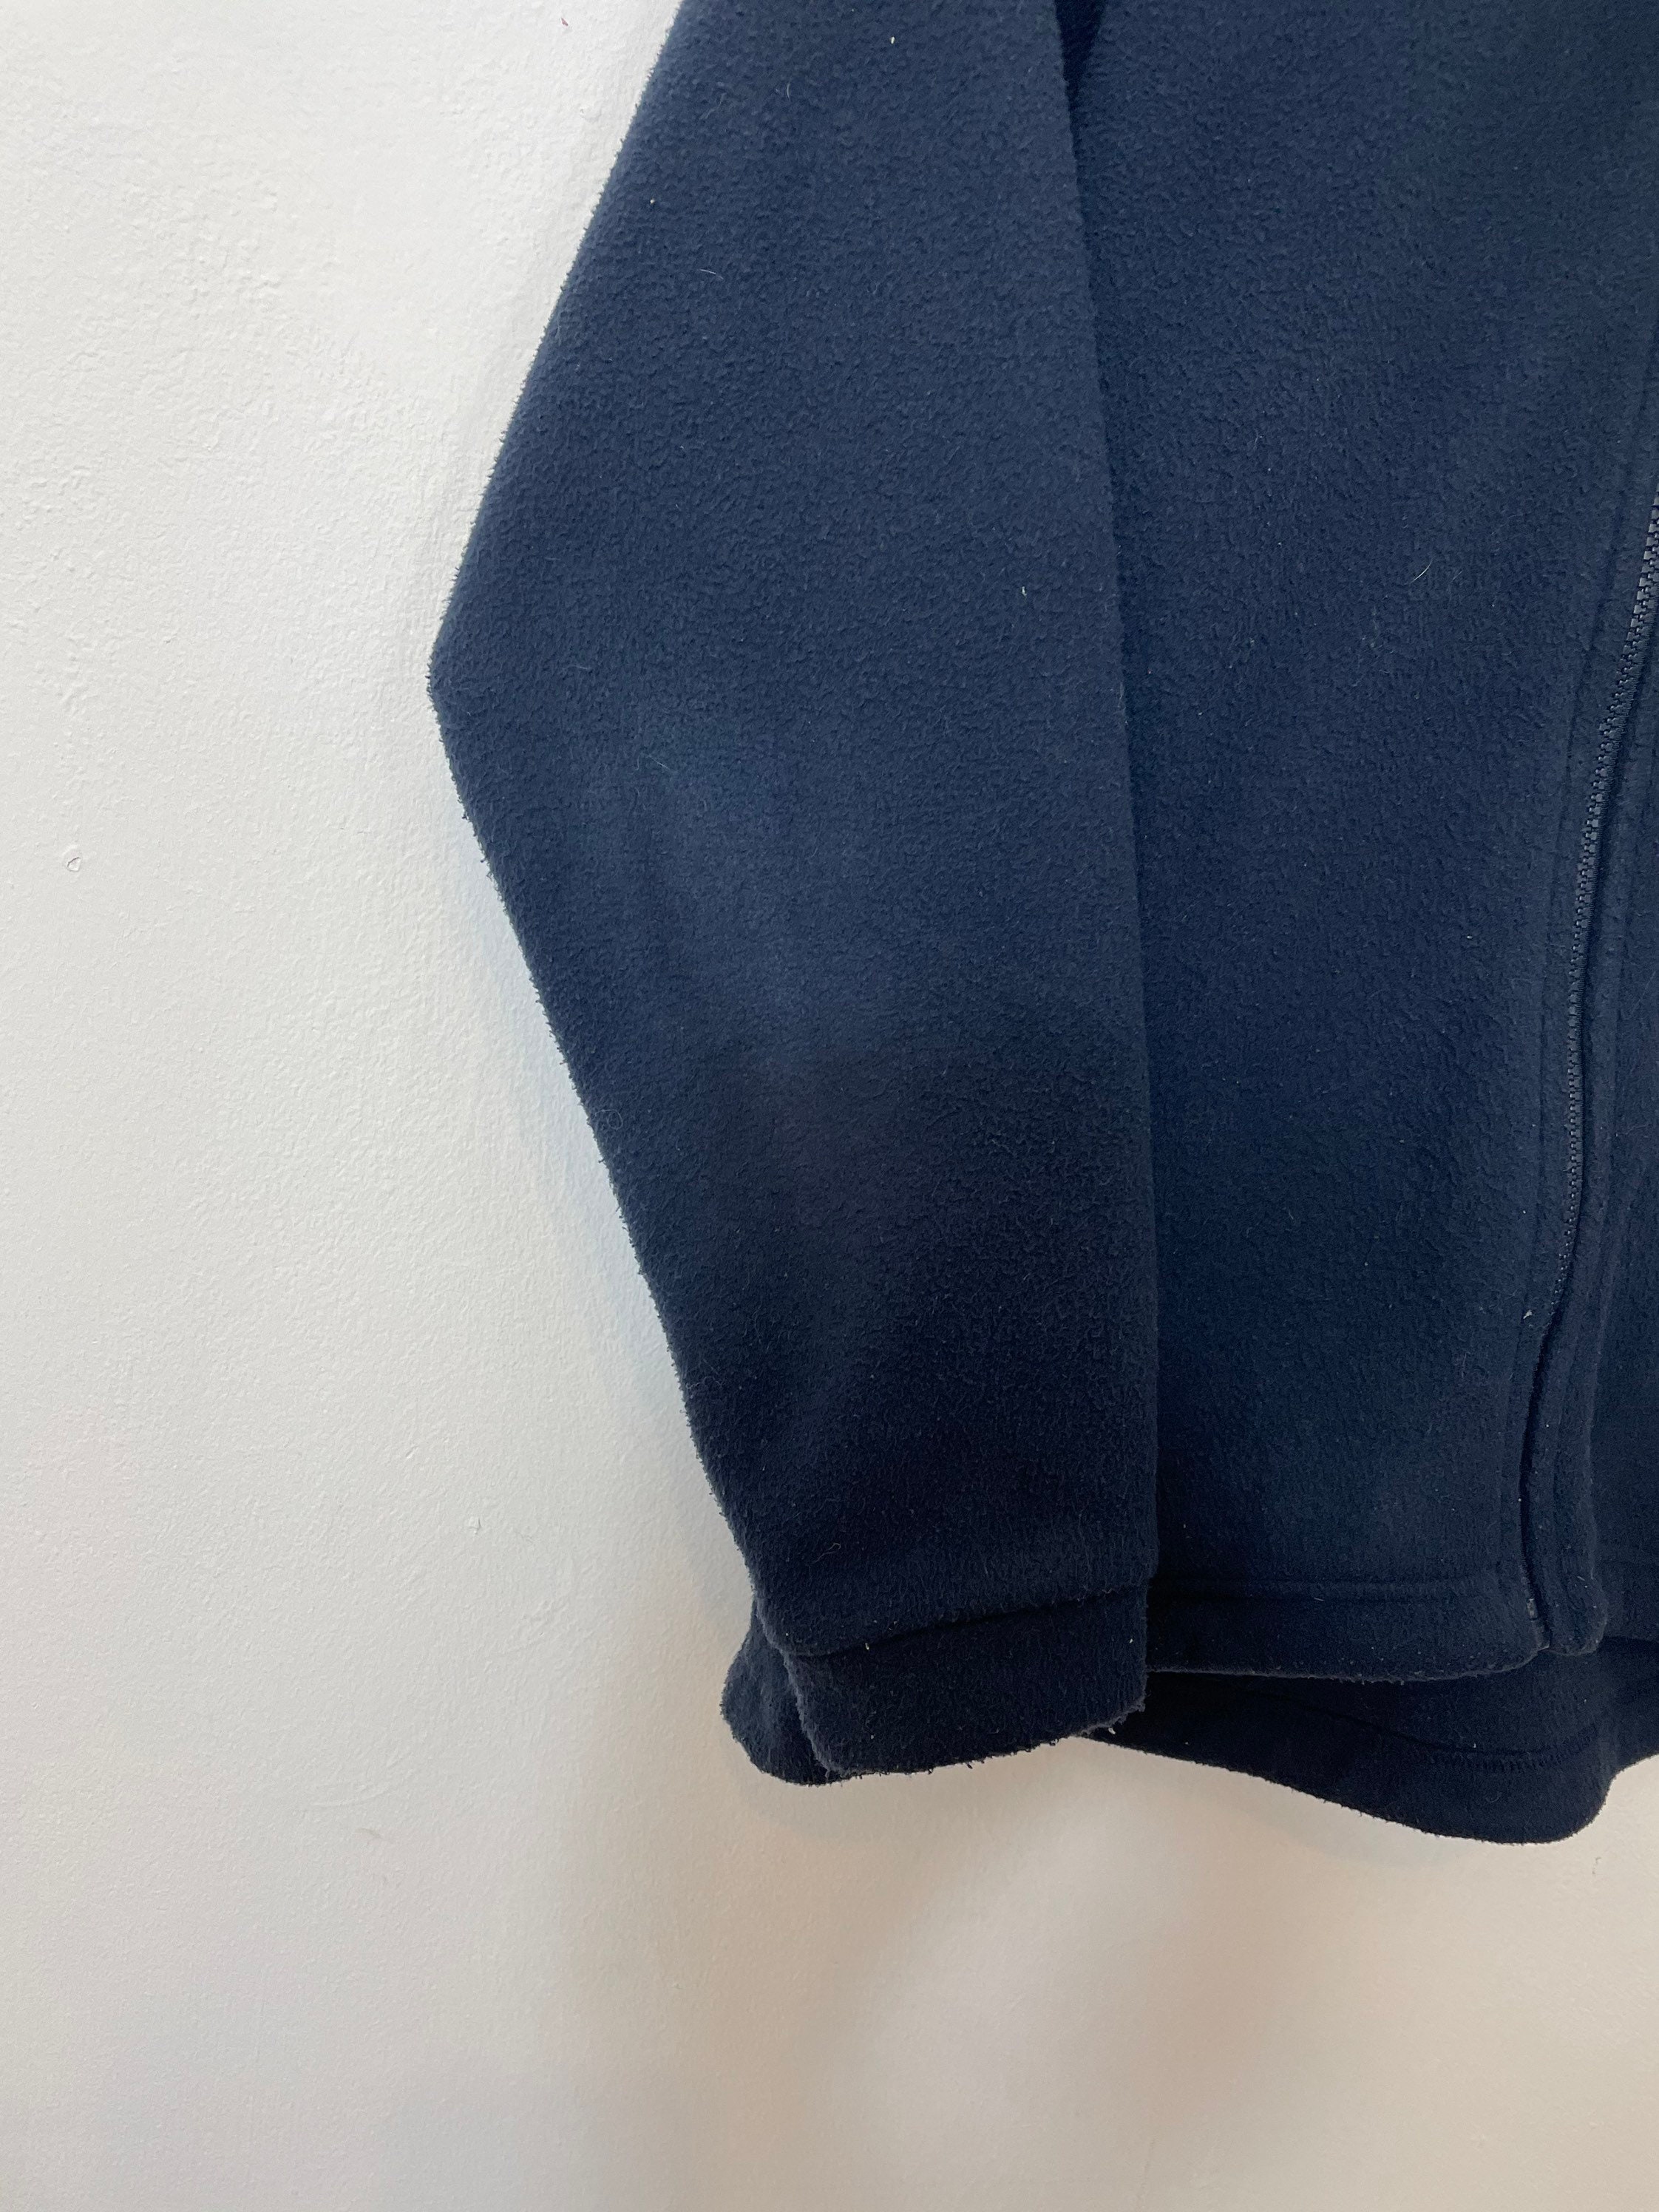 Women's Vintage Berghaus Zip Up Fleece Jacket Top Navy | Etsy